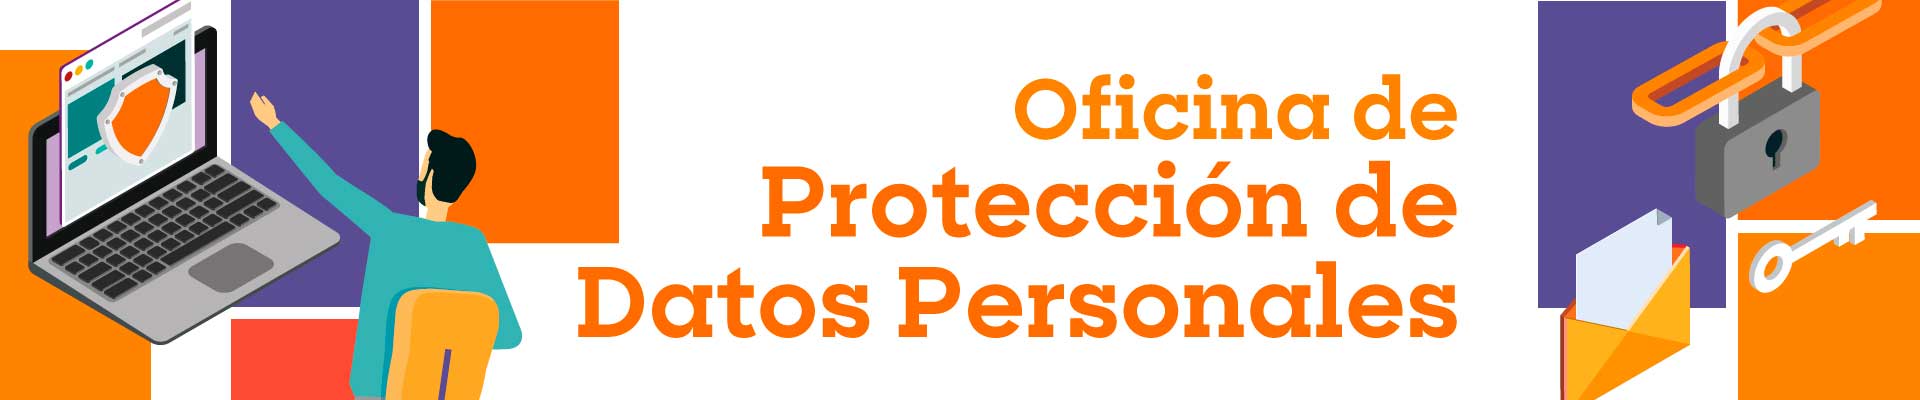 Oficina Protección de Datos Personales